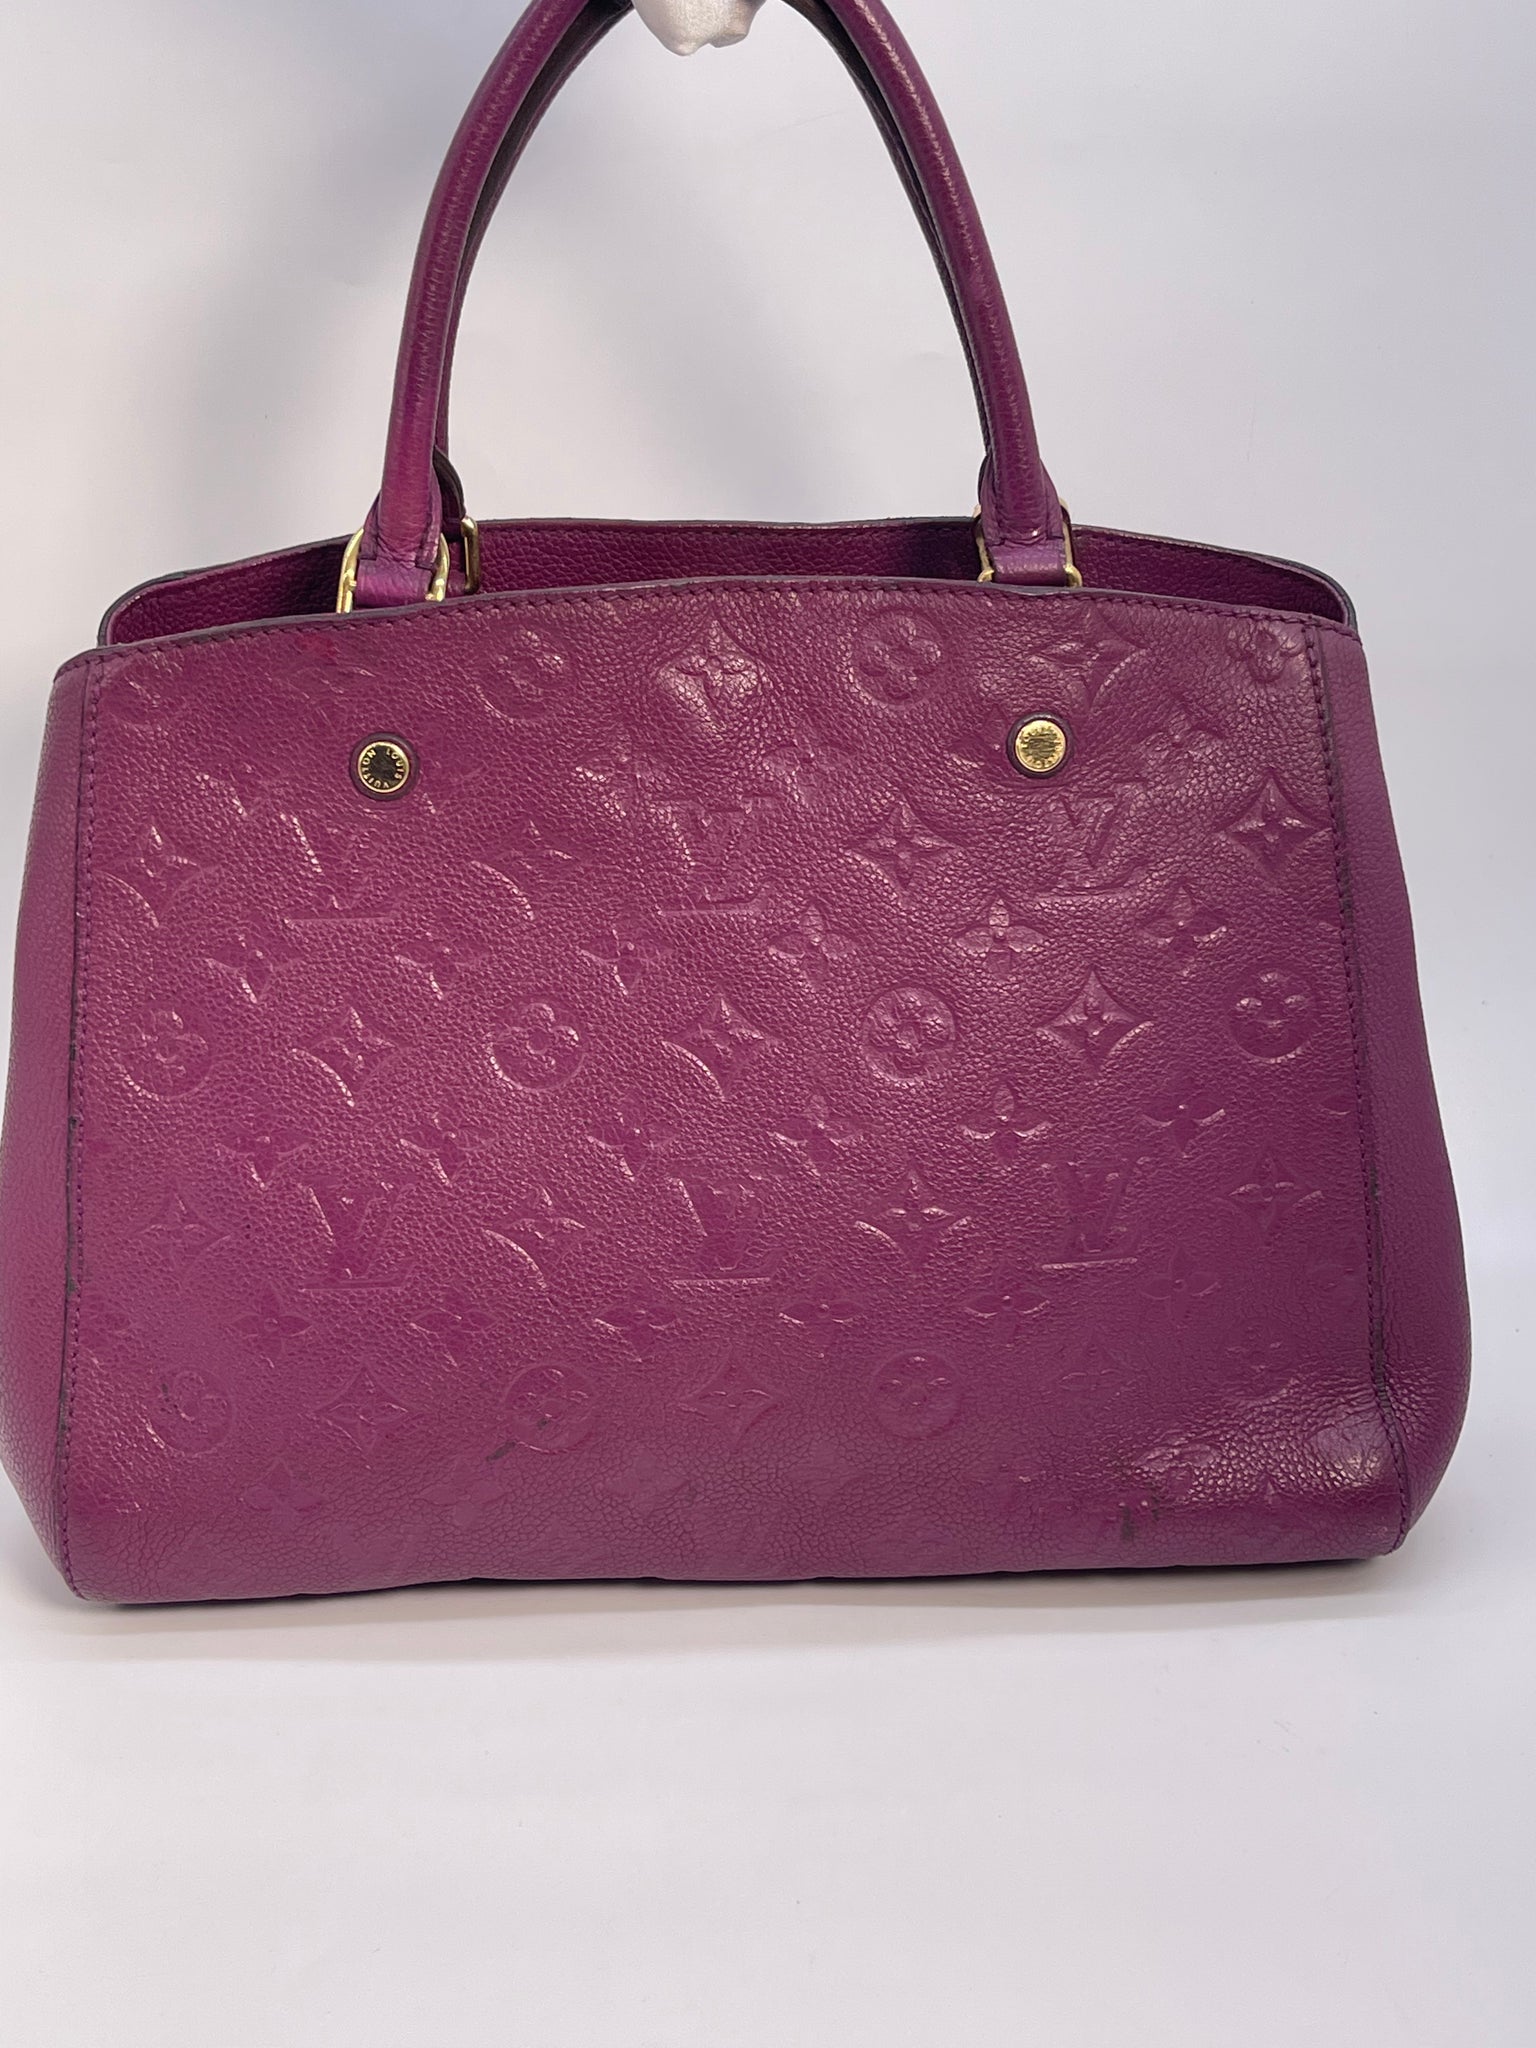 louis vuitton handbag purple